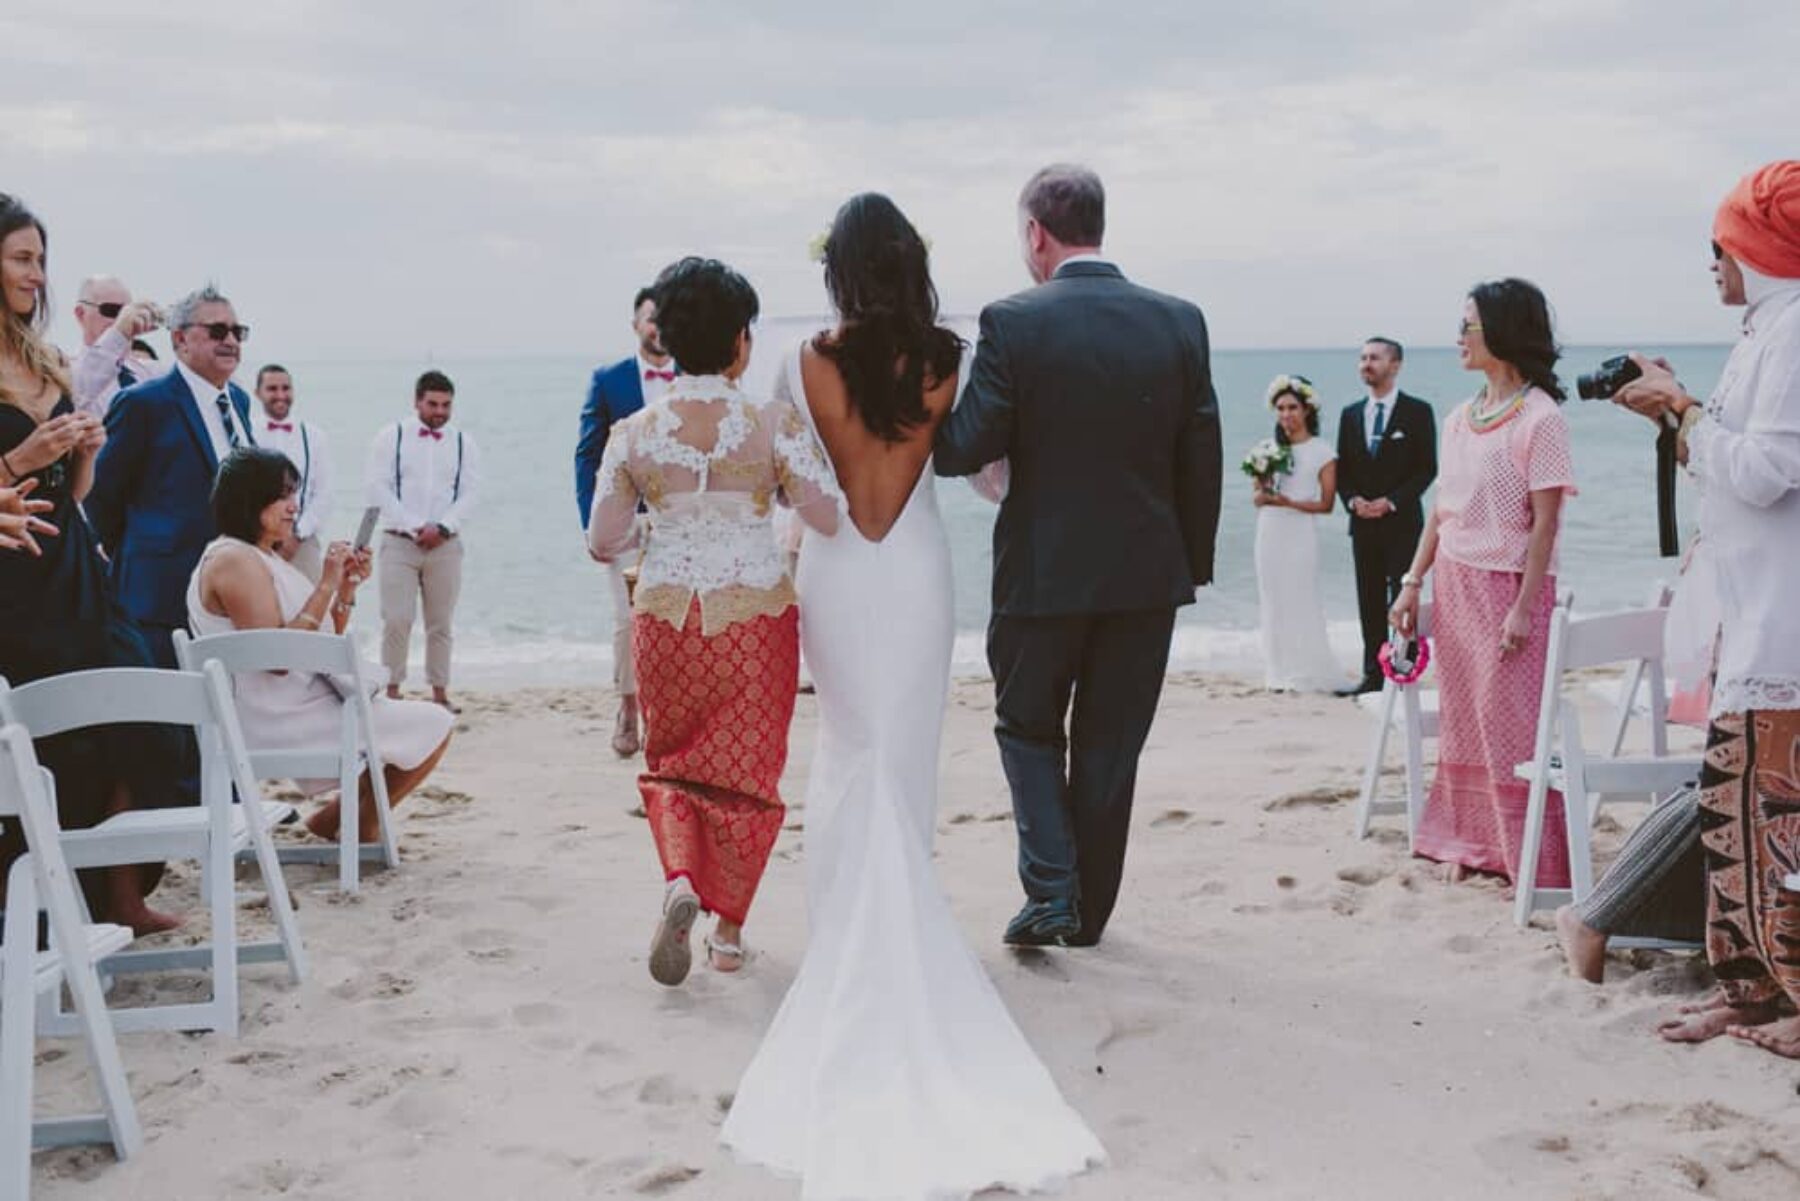 Mornington Peninsula beach wedding | Photography by Beck Rocchi